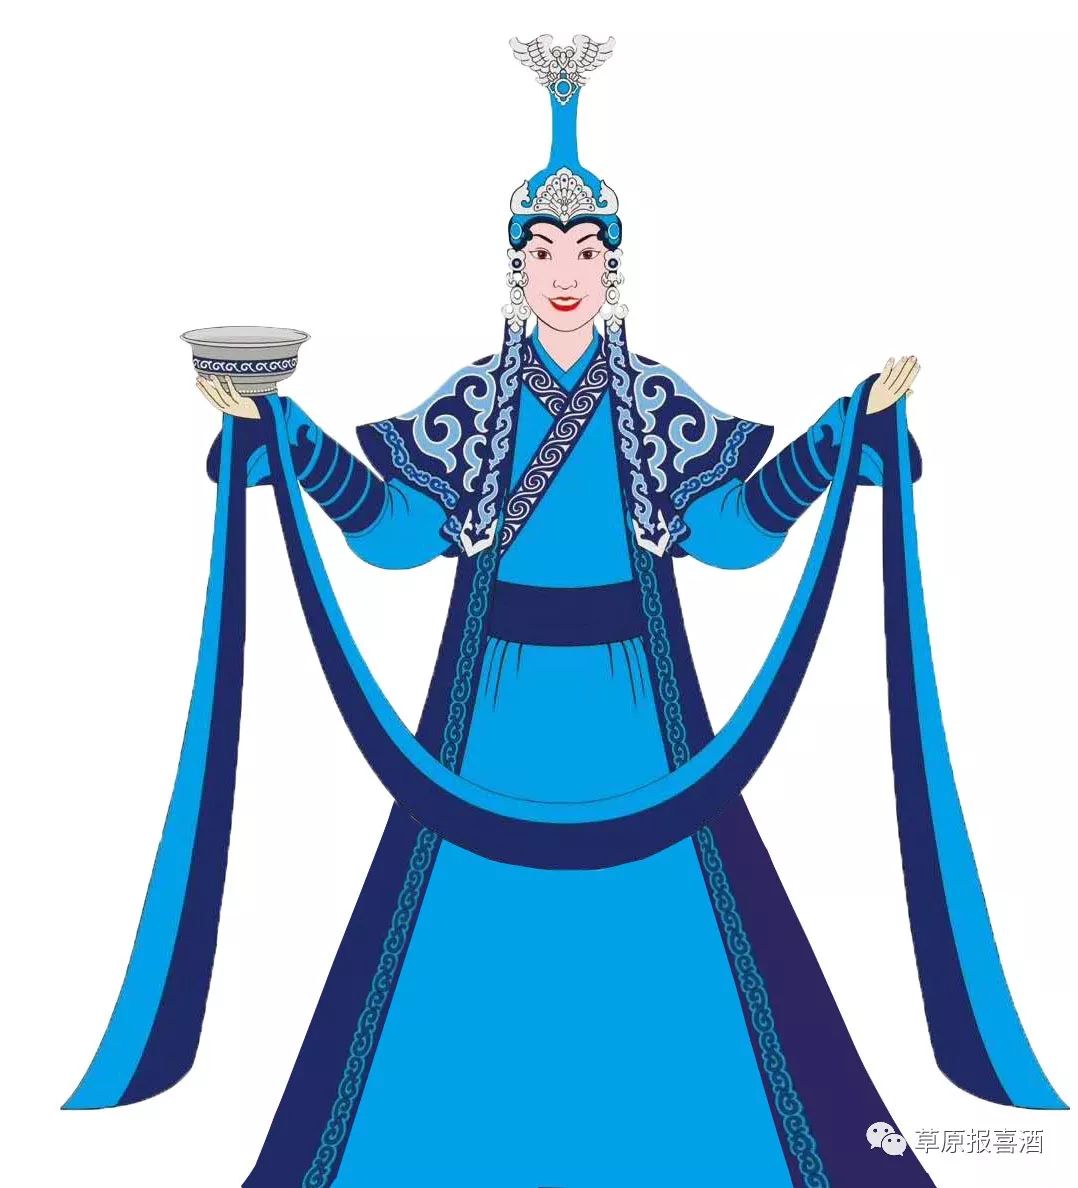 蒙古族文化艺术守望者——那仁夫